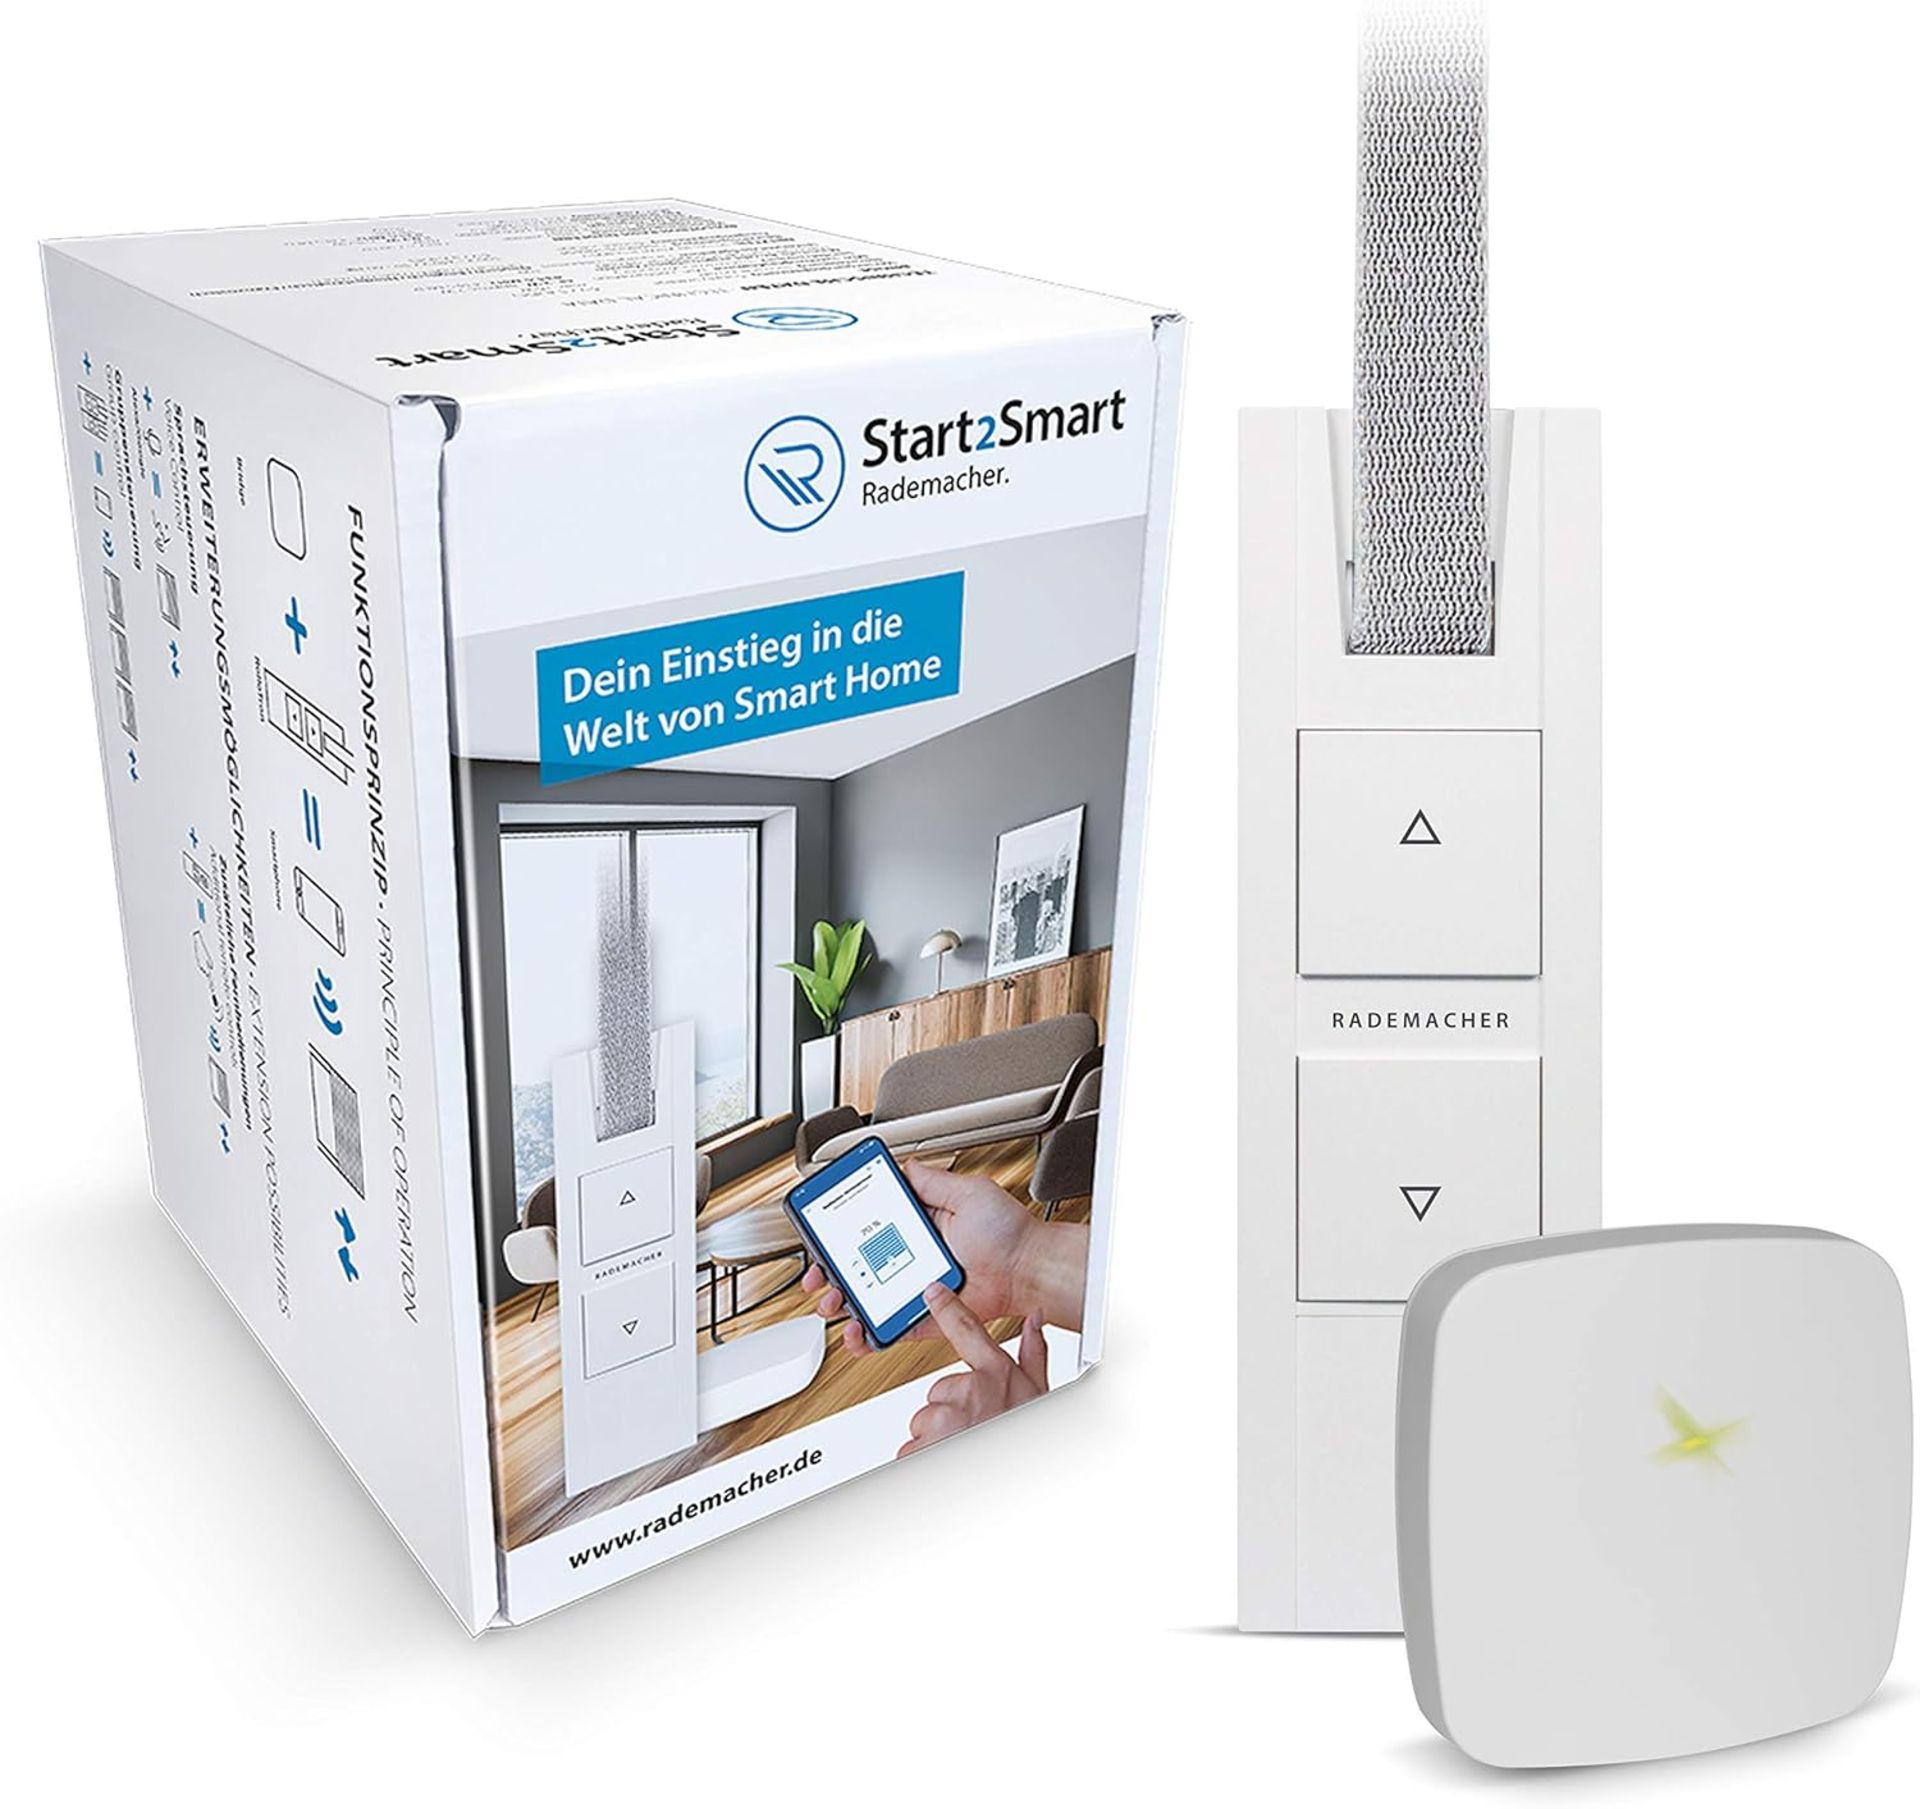 Rademacher Start2Smart-Kit"Belt Winder - Smart Home Starter Set Including Bridge & RolloTron Base D